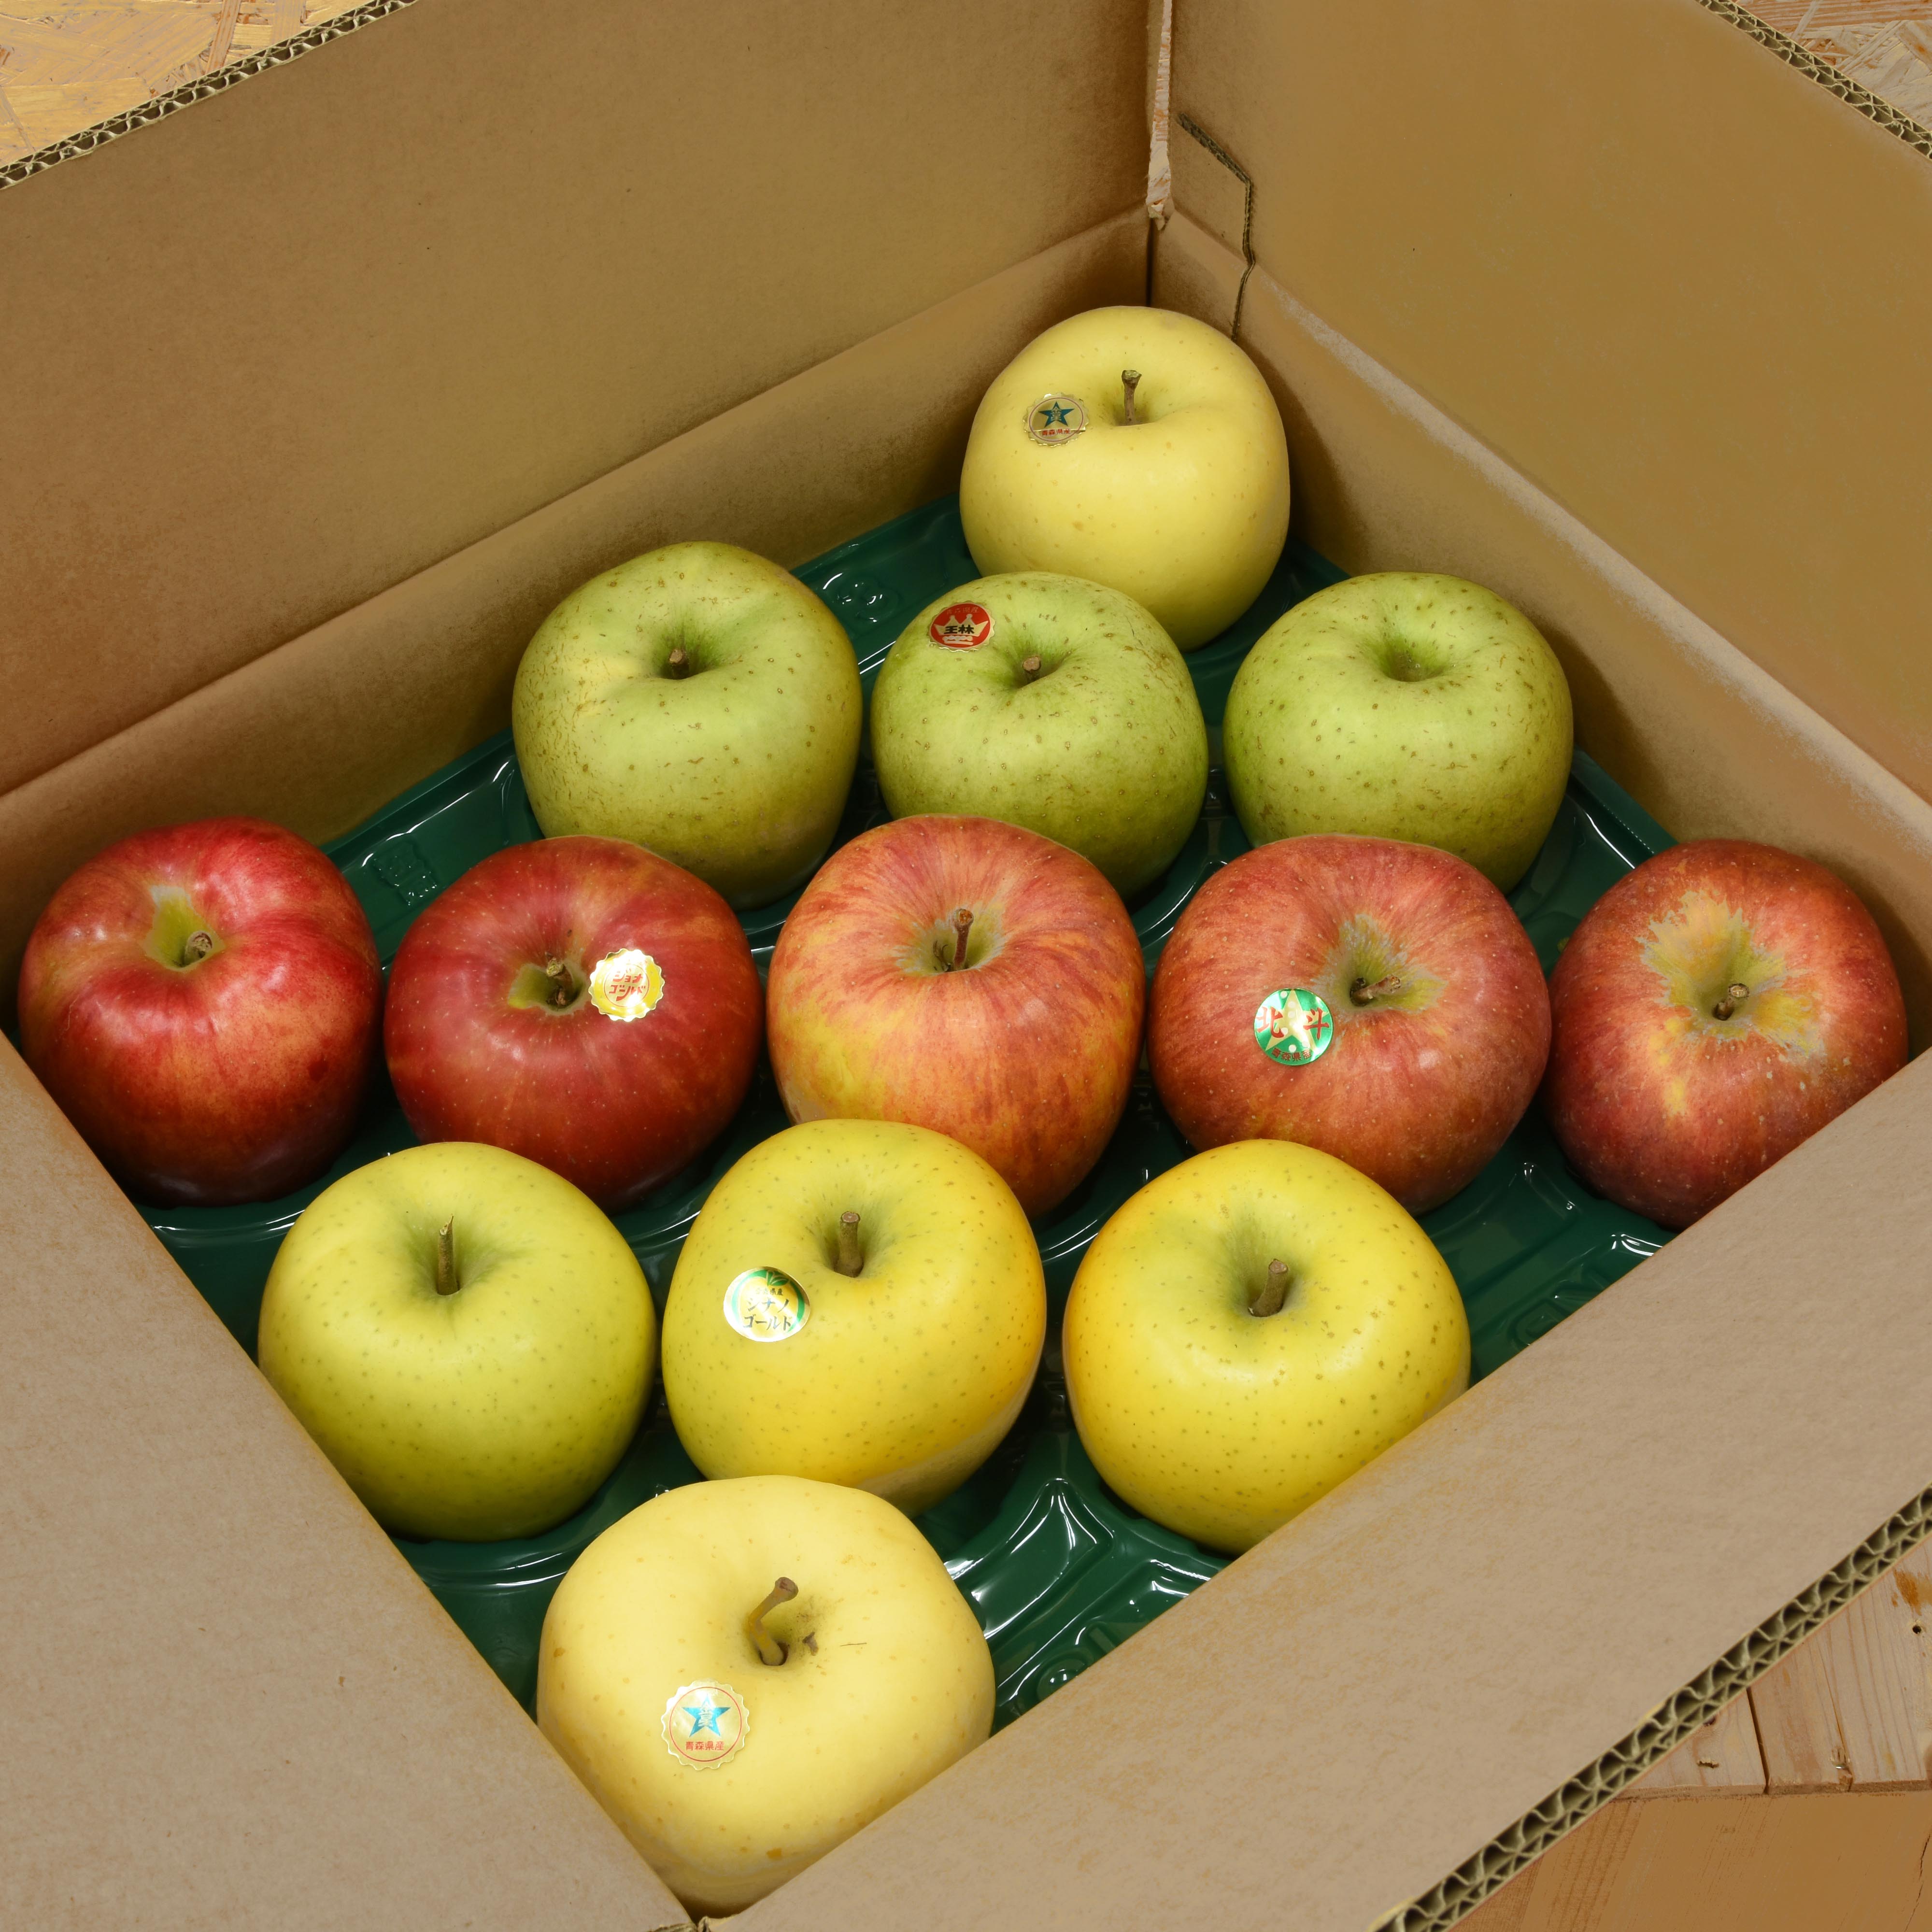 佐藤果樹園 りんご直送便 季節のりんご詰め合わせ 家庭用 5kg